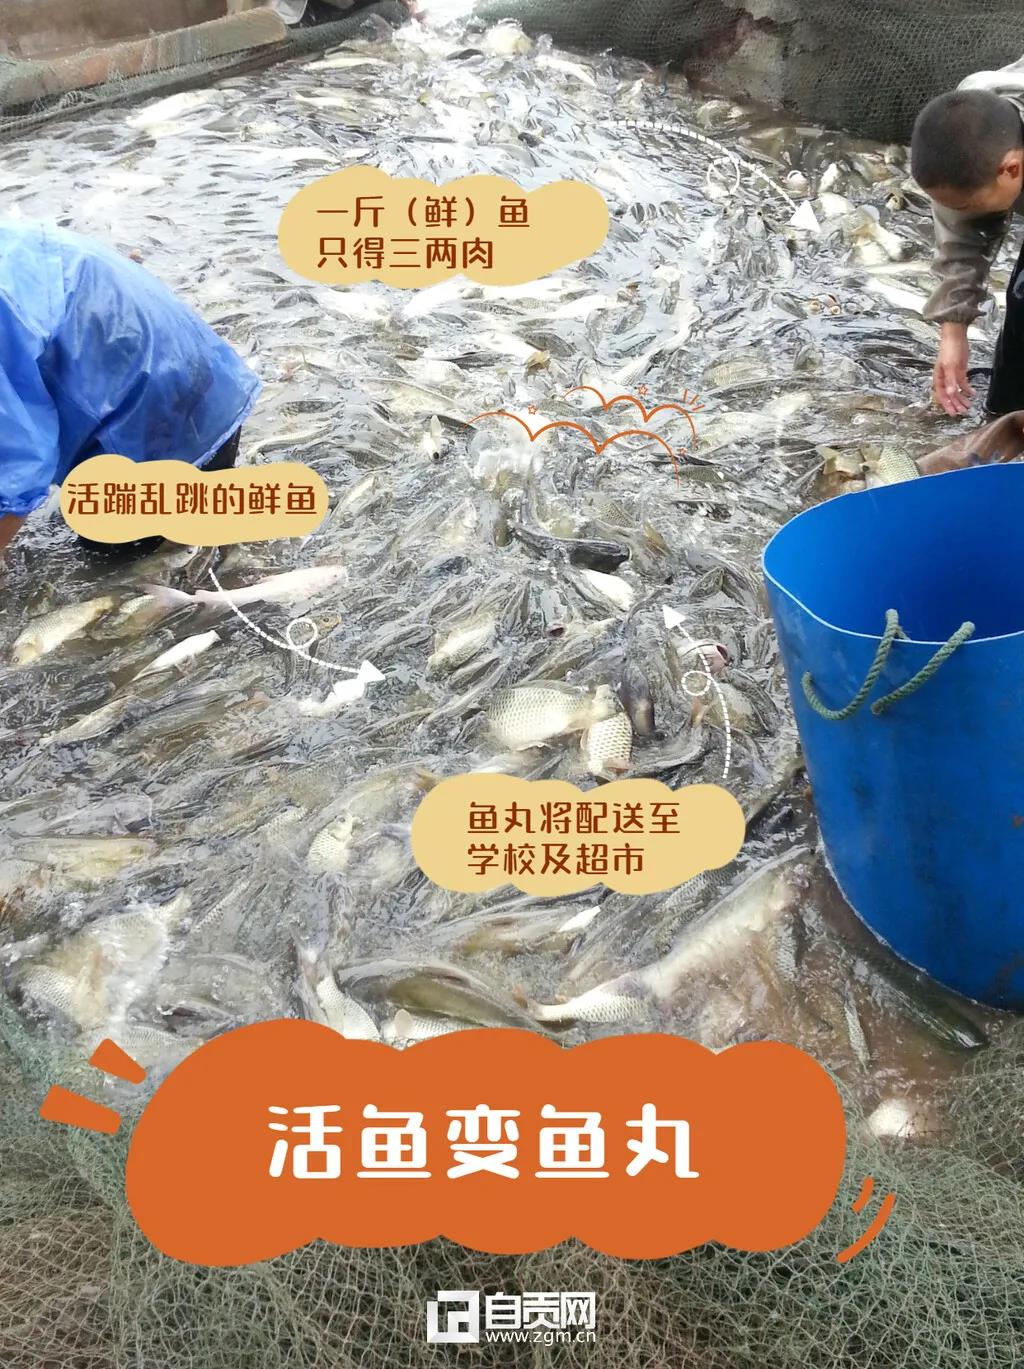 瞄准市场空白，自贡这家企业把鱼做出“新花样”！